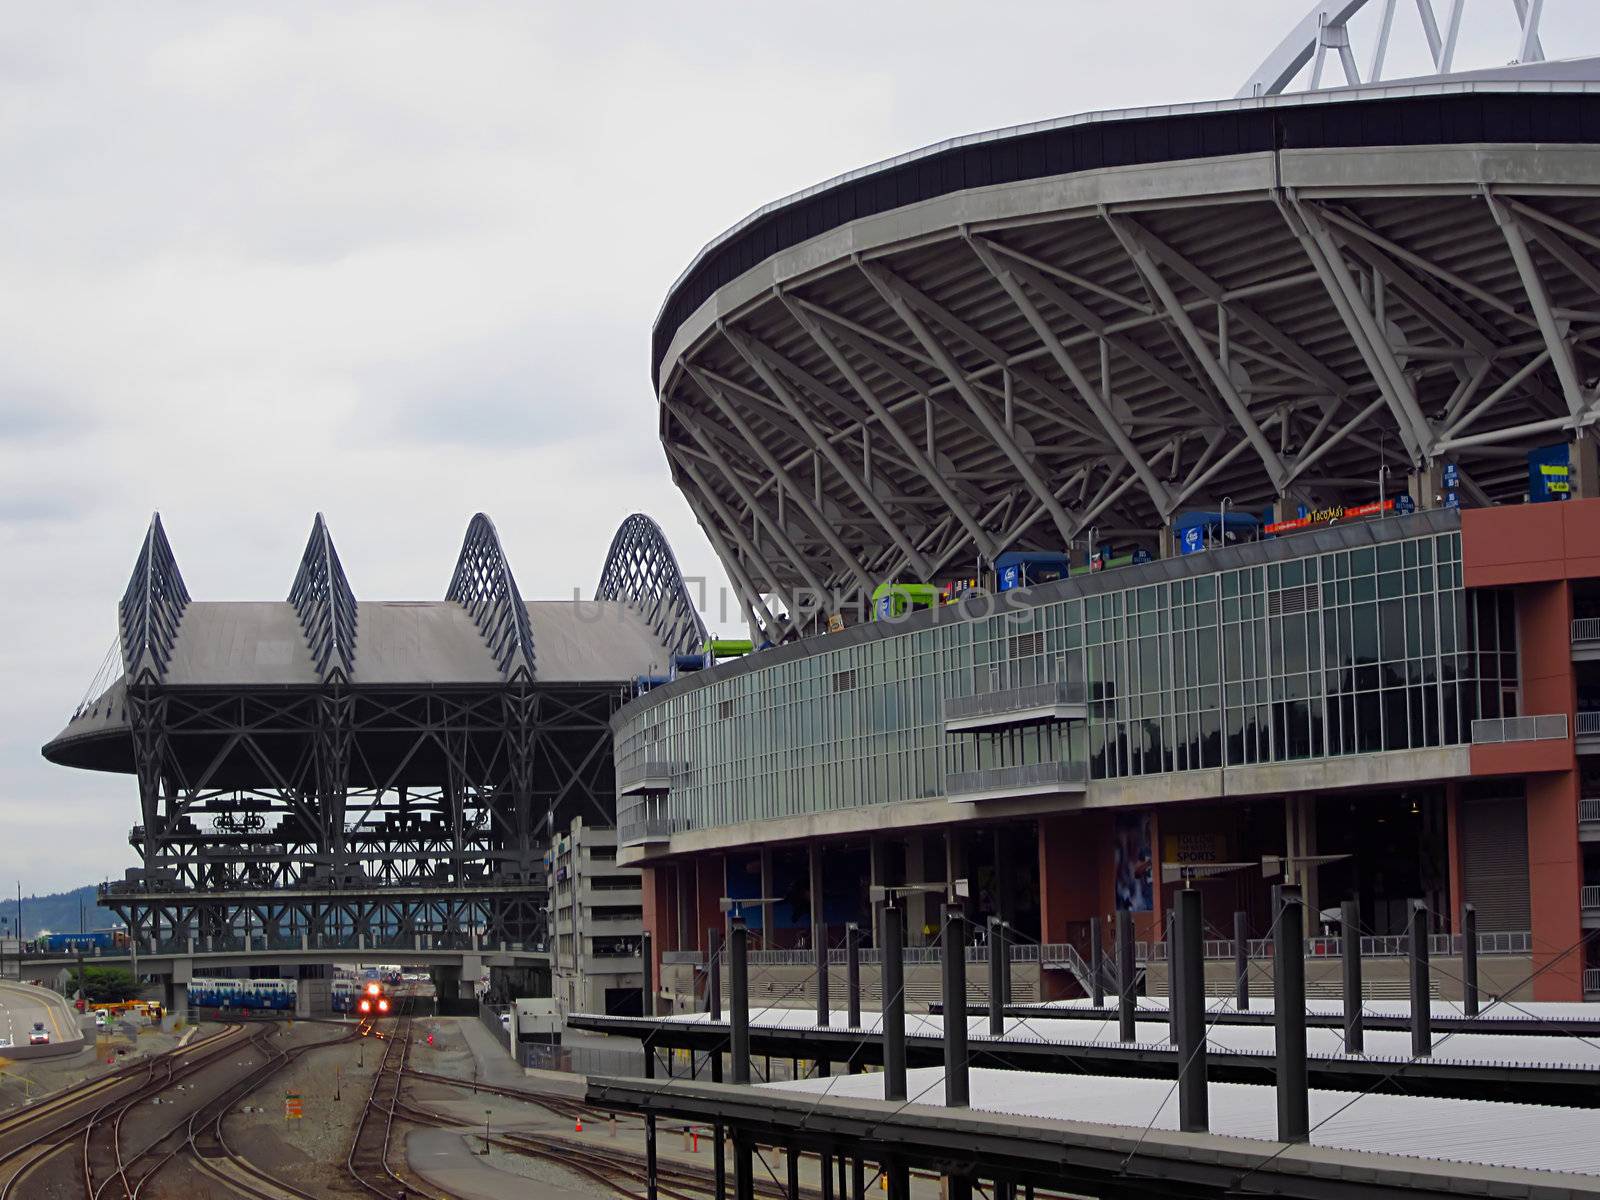 A photograph of a commuter train near a sports stadium.